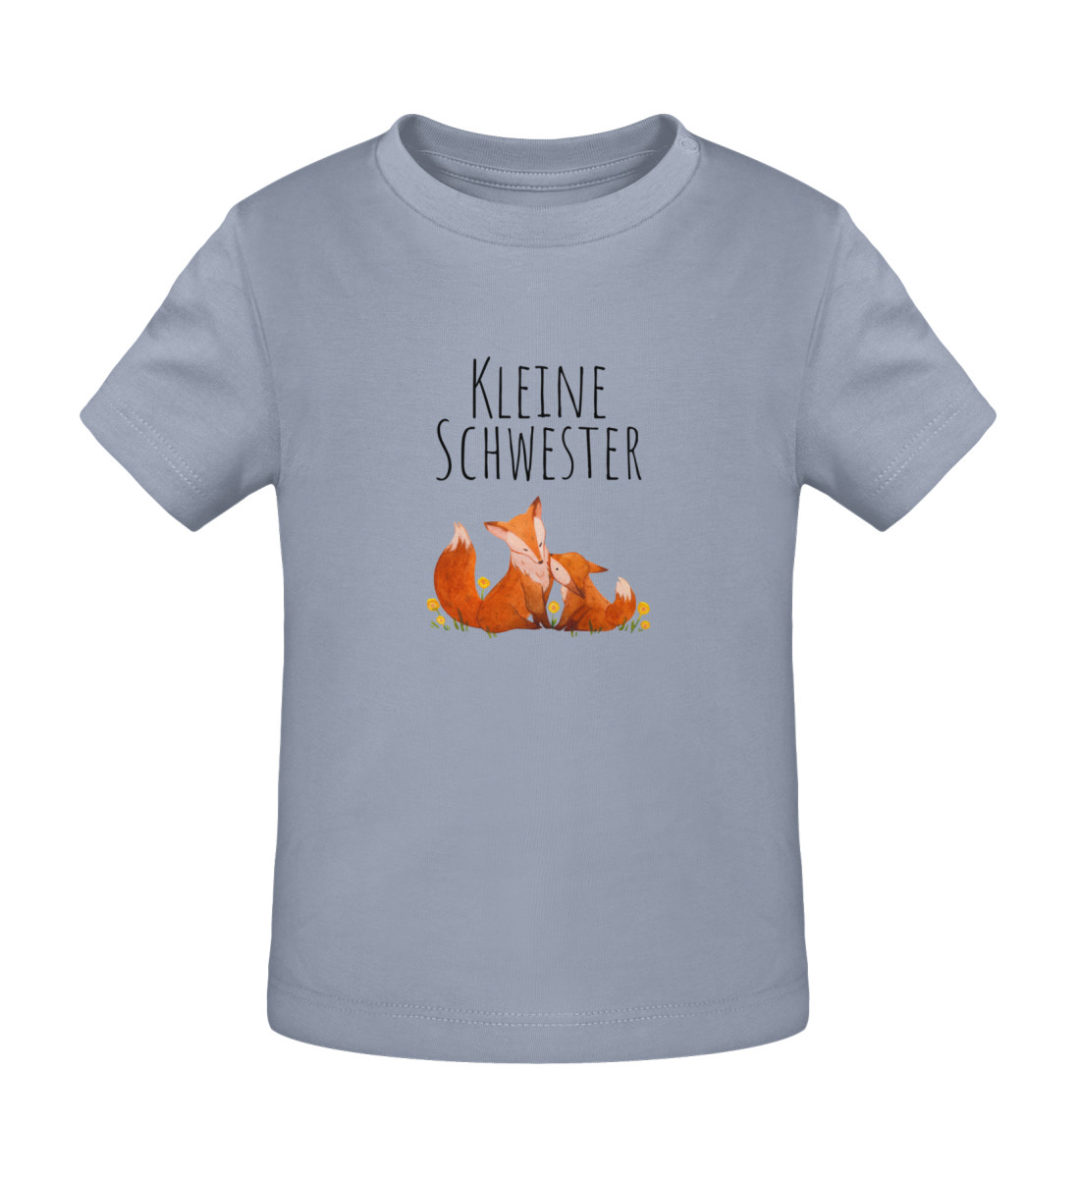 Kleine Schwester - Baby Creator T-Shirt ST/ST-7086